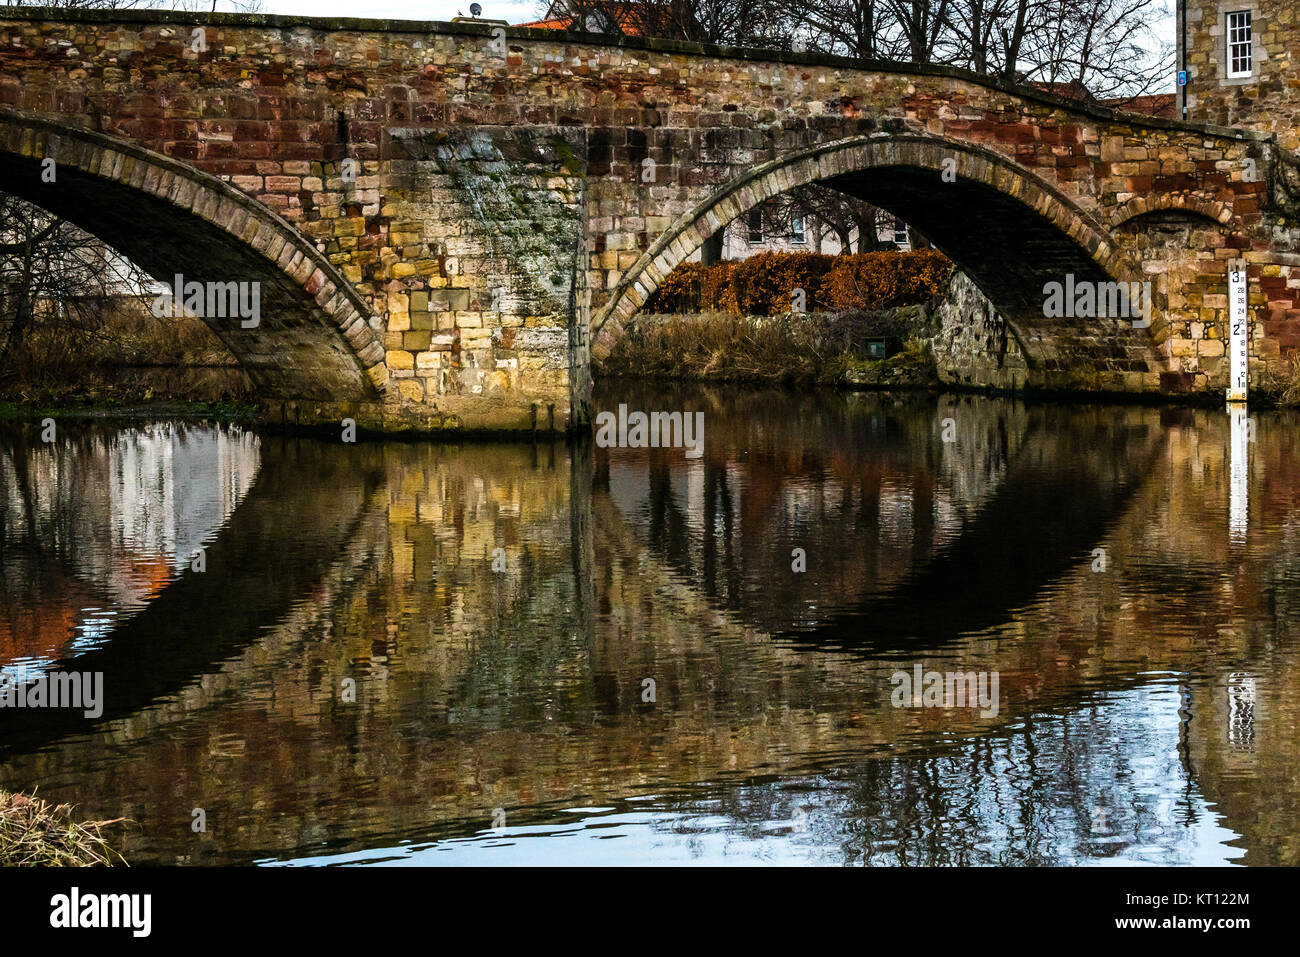 16ème siècle ancien Nungate Pont sur la rivière Tyne, Haddington, East Lothian, Scotland, UK. Un pont en grès avec des arcs et marqueur de niveau d'eau Banque D'Images